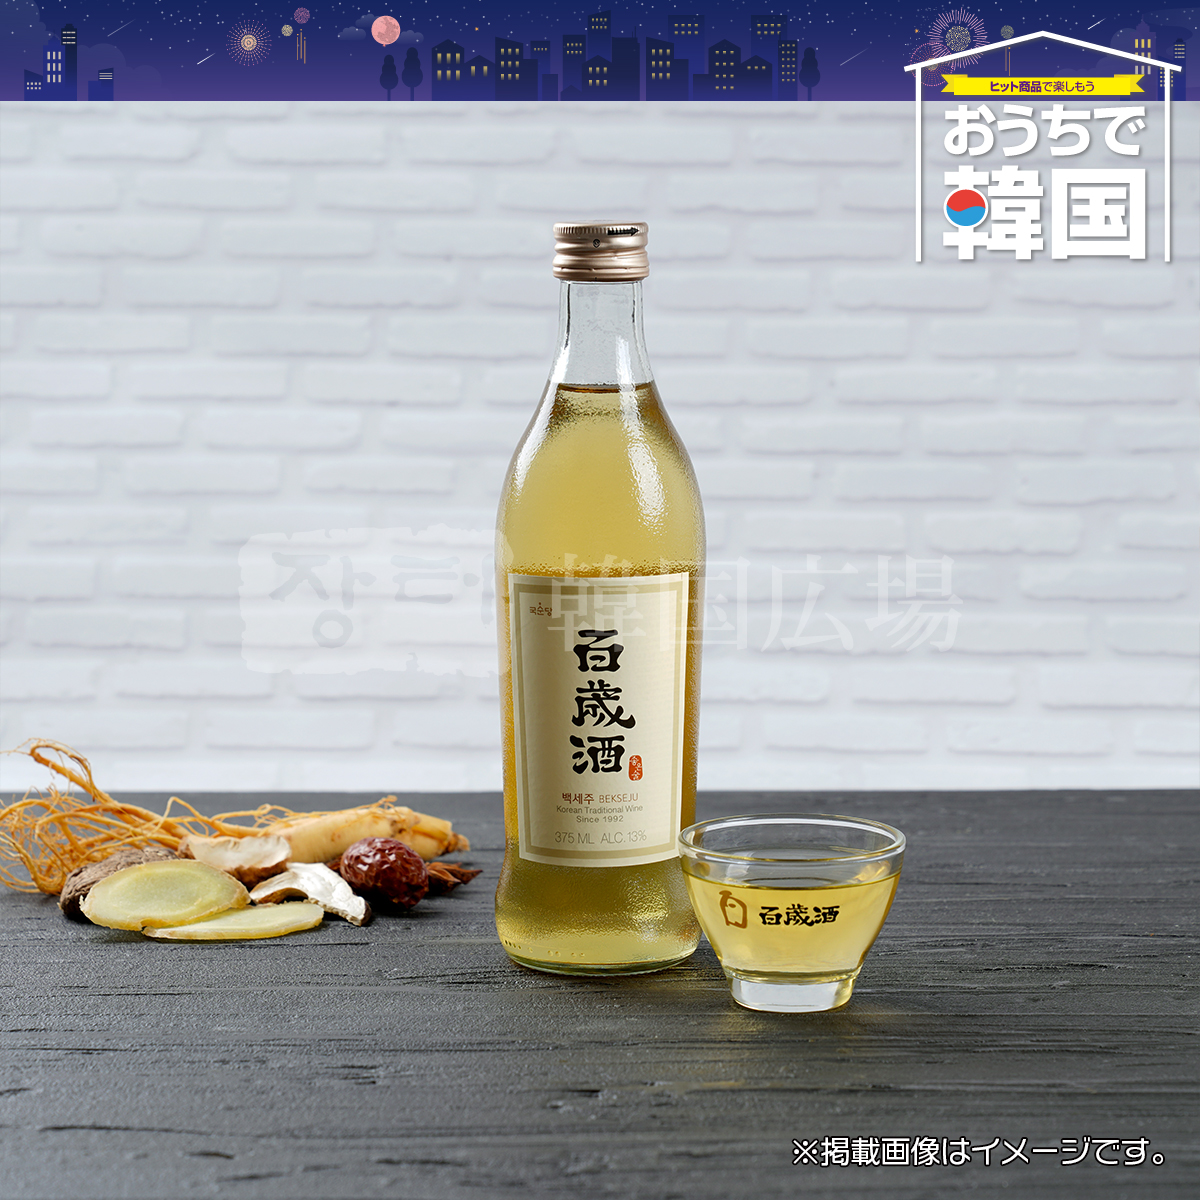 ... 100 -years old sake 375ml / Korea sake 